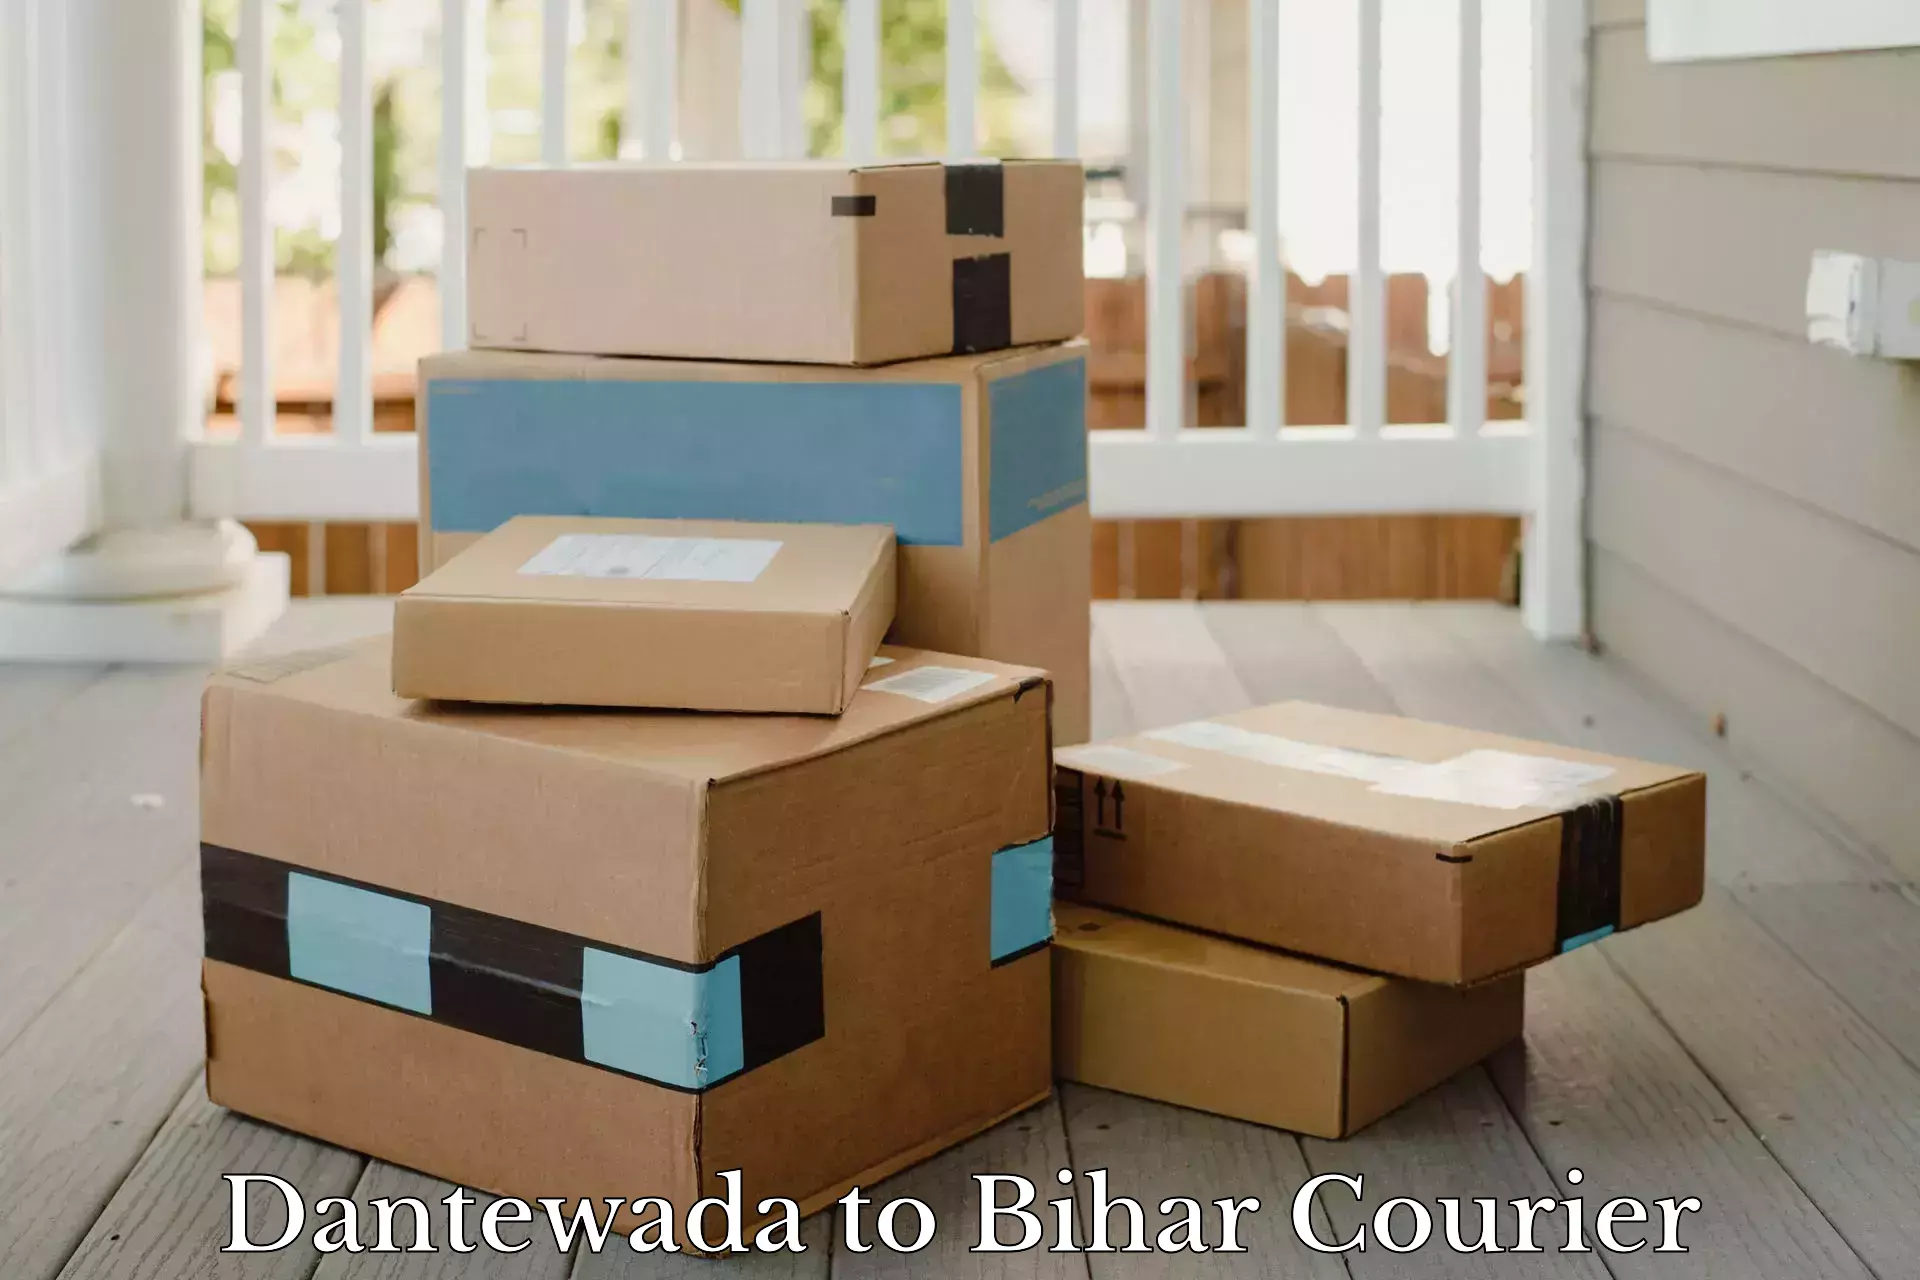 Customer-centric shipping in Dantewada to Sitamarhi